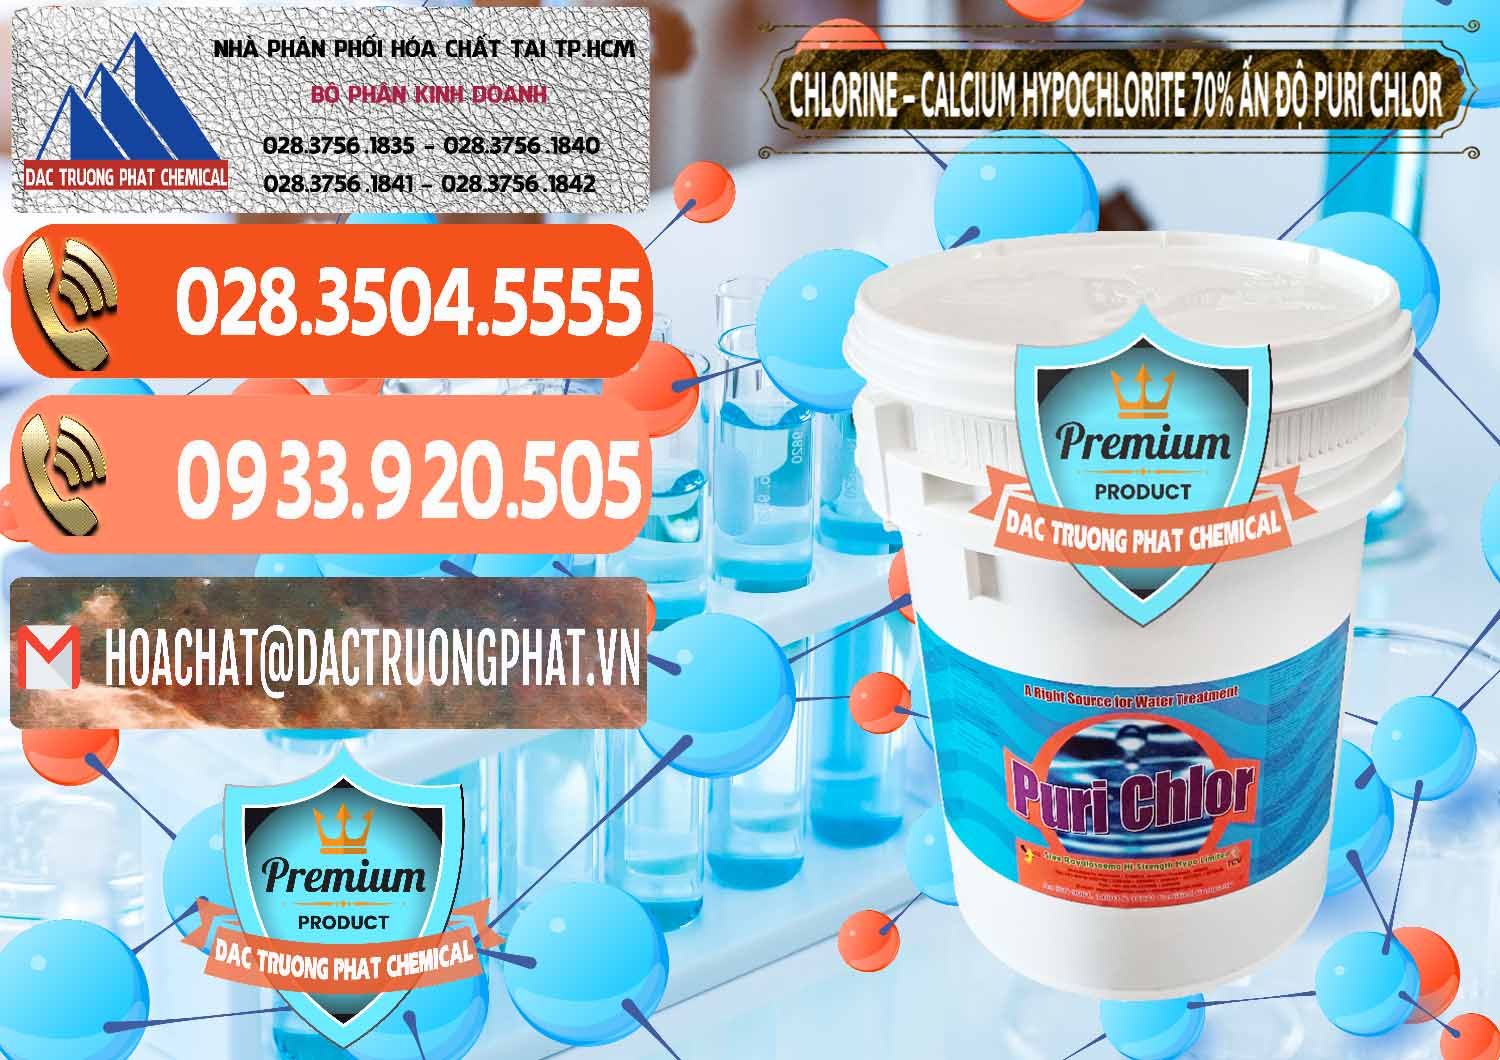 Nơi chuyên kinh doanh ( bán ) Chlorine – Clorin 70% Puri Chlo Ấn Độ India - 0123 - Chuyên phân phối & cung cấp hóa chất tại TP.HCM - hoachatmientay.com